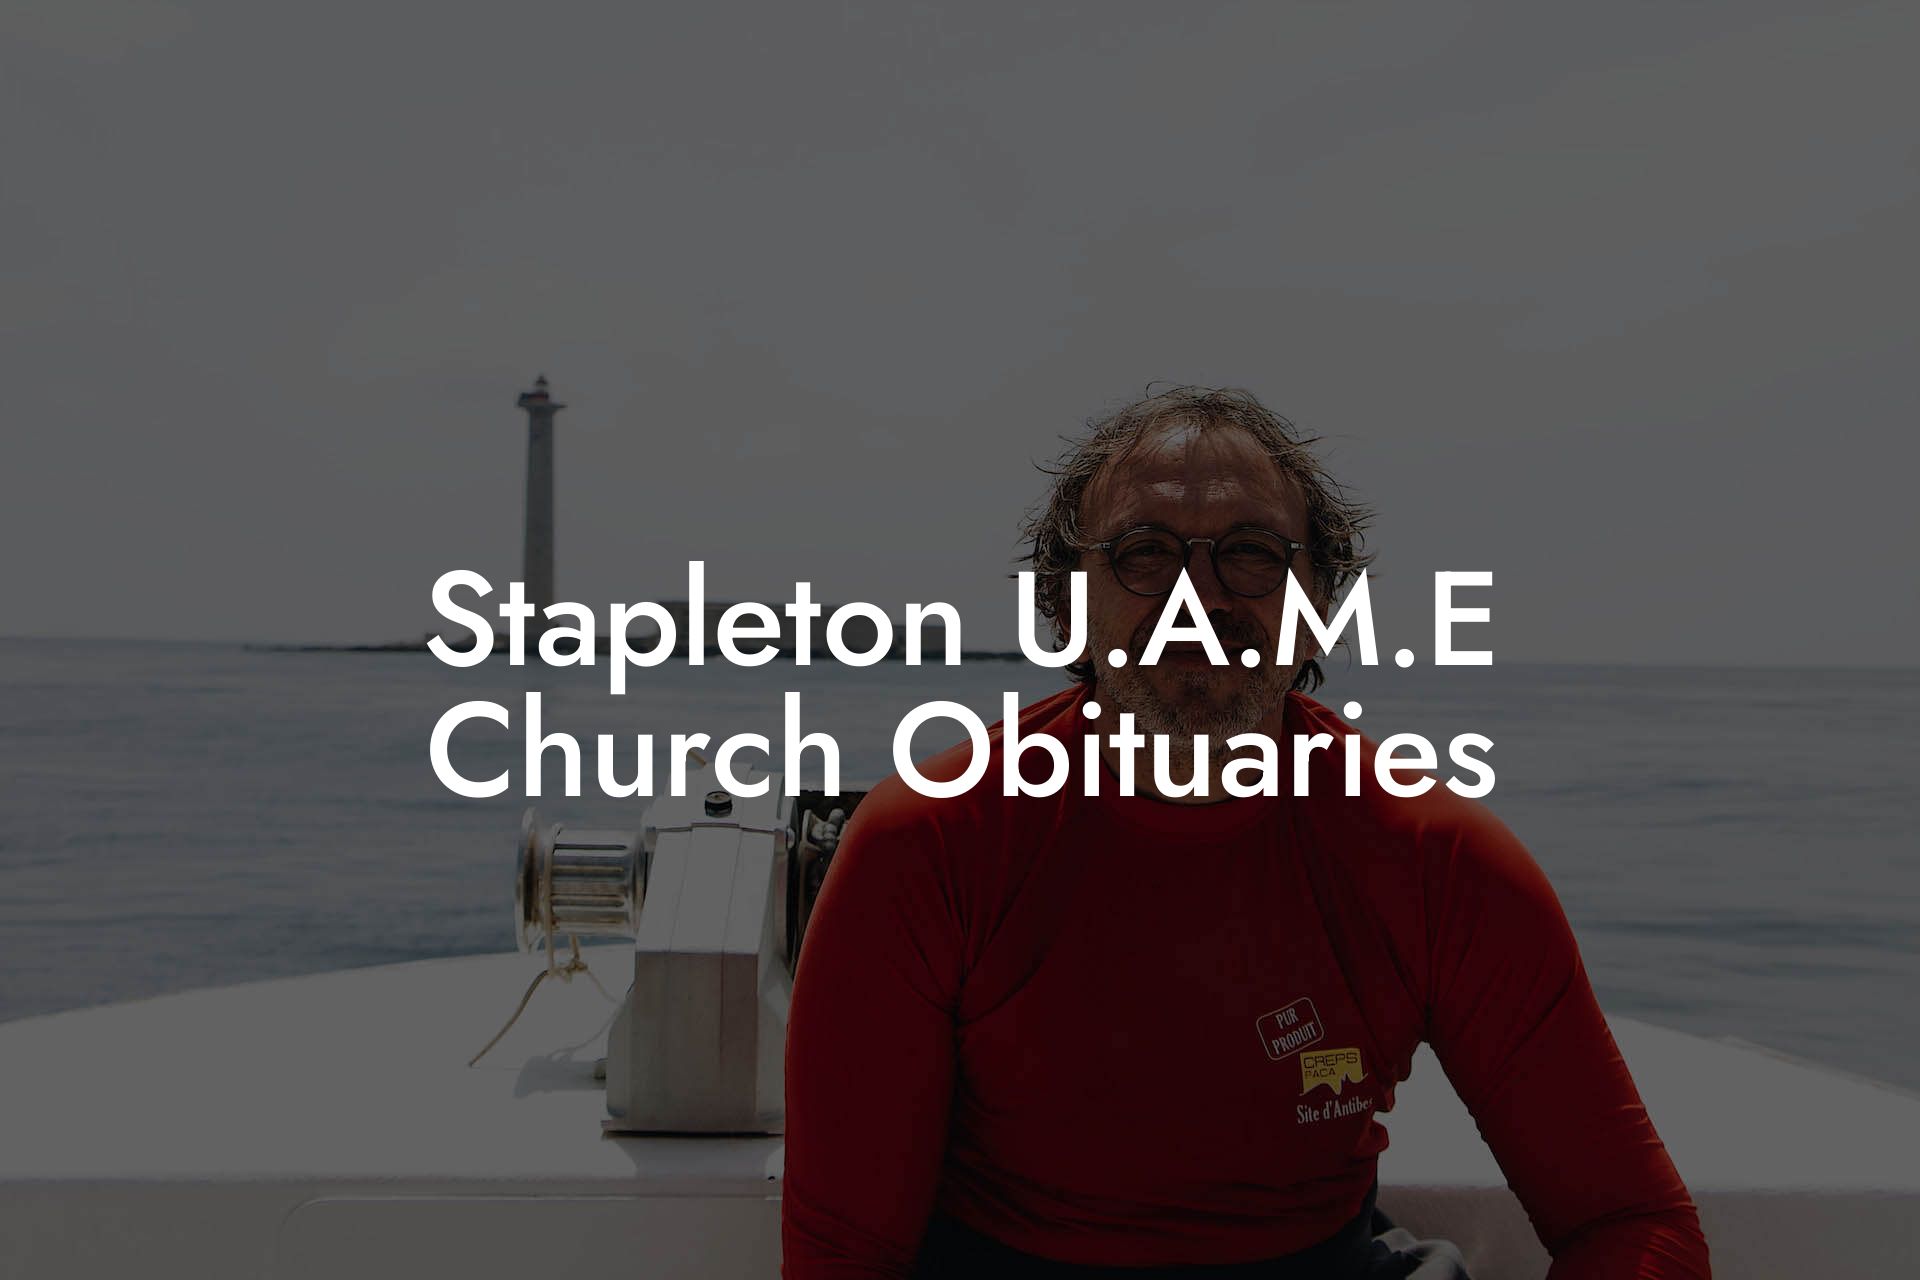 Stapleton U.A.M.E Church Obituaries